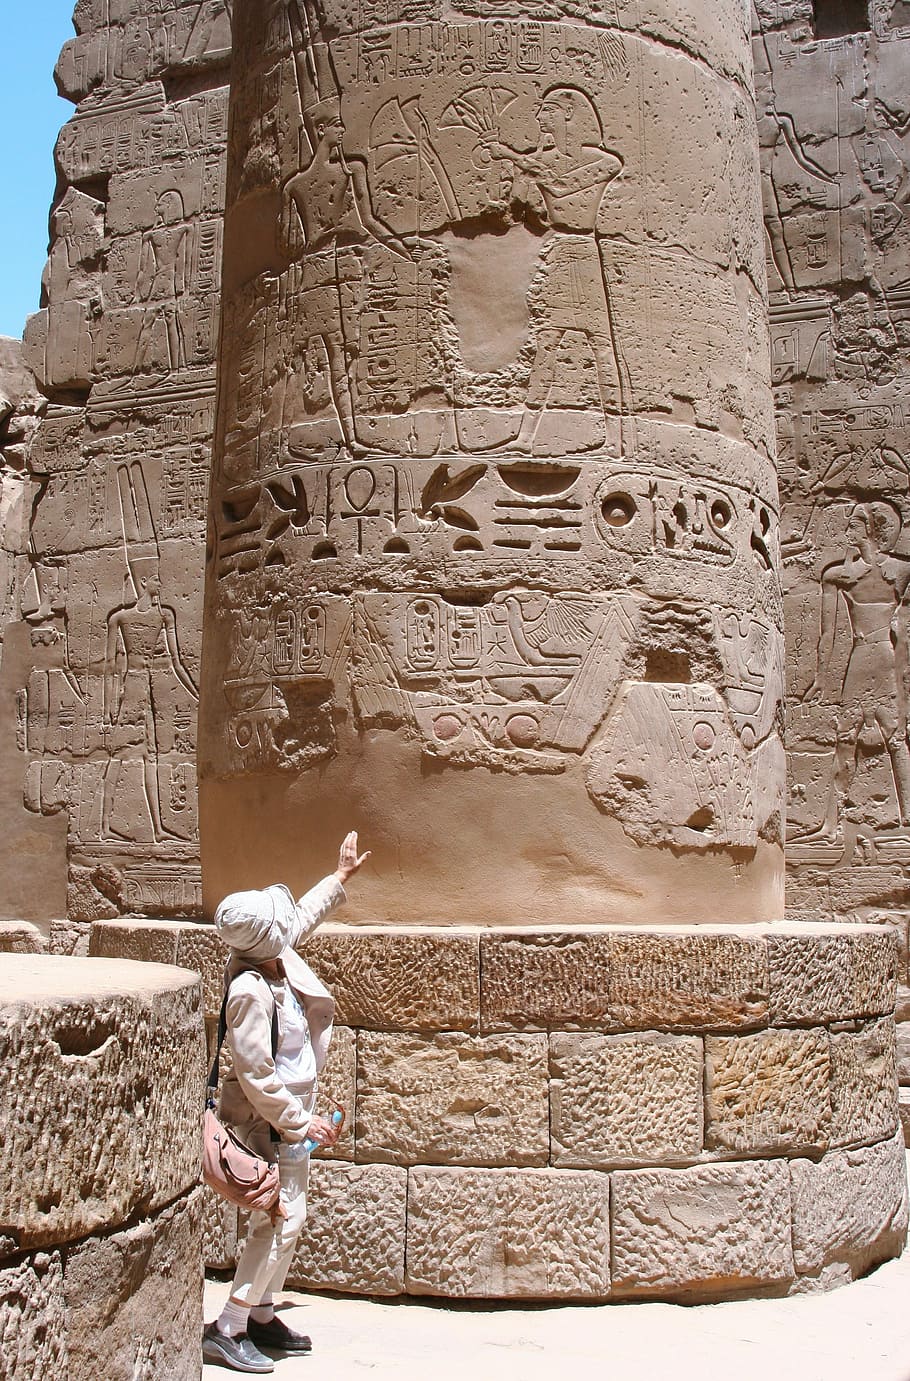 エジプト, ルクソール, カルナック神殿, 象形文字, 古代, 文明, ナイル川, 青い空, 巨石, アントマサコ